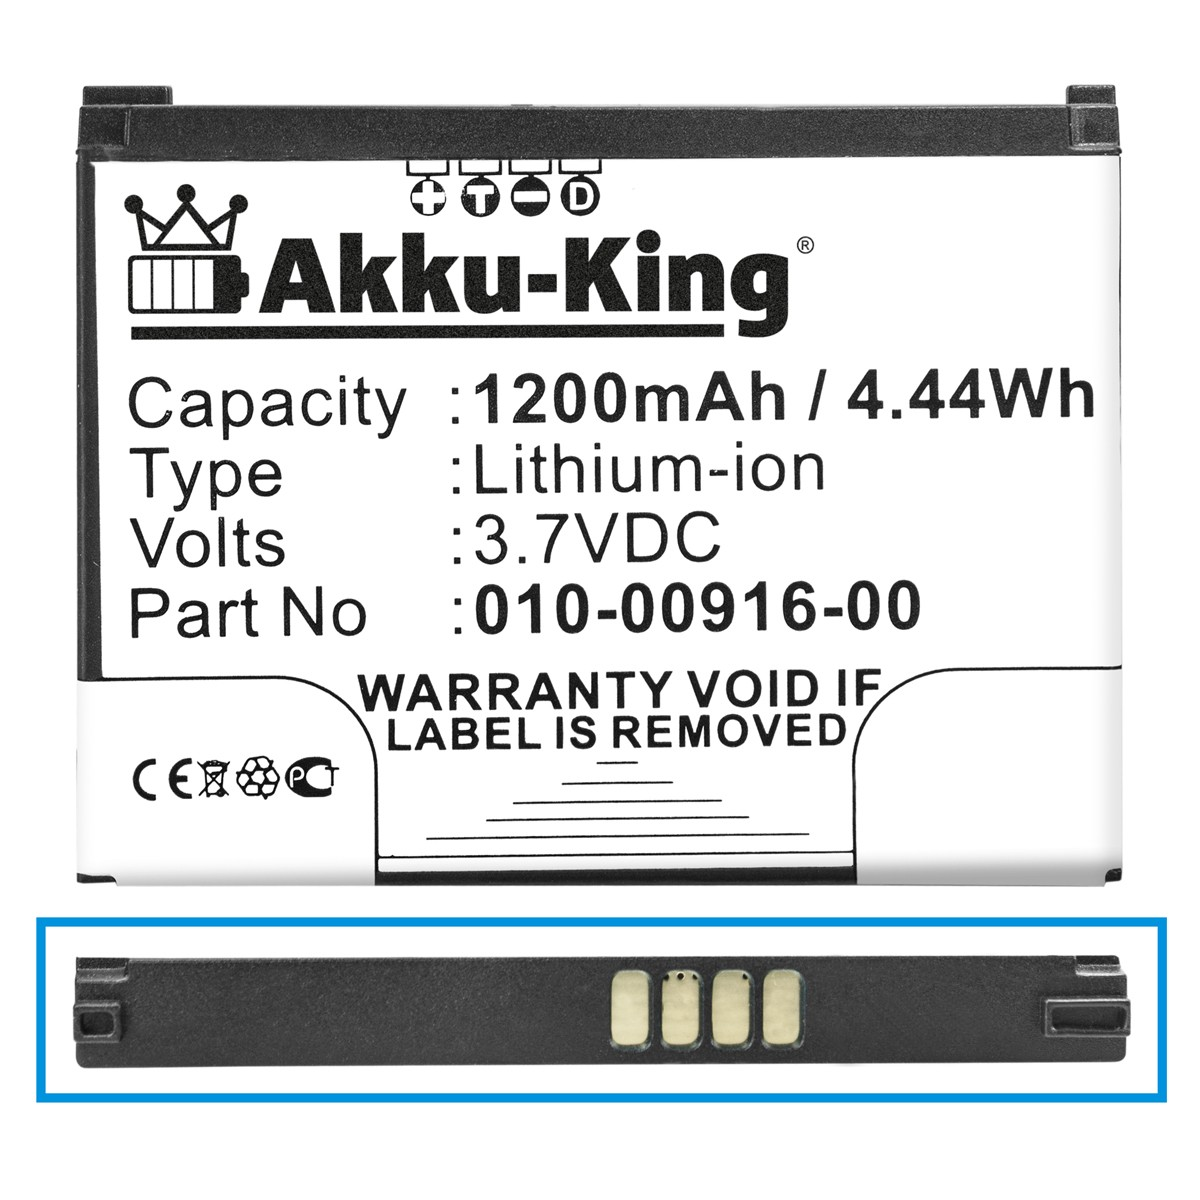 AKKU-KING Akku Volt, kompatibel mit Asus 3.7 1200mAh 010-11212-14 Geräte-Akku, Li-Ion